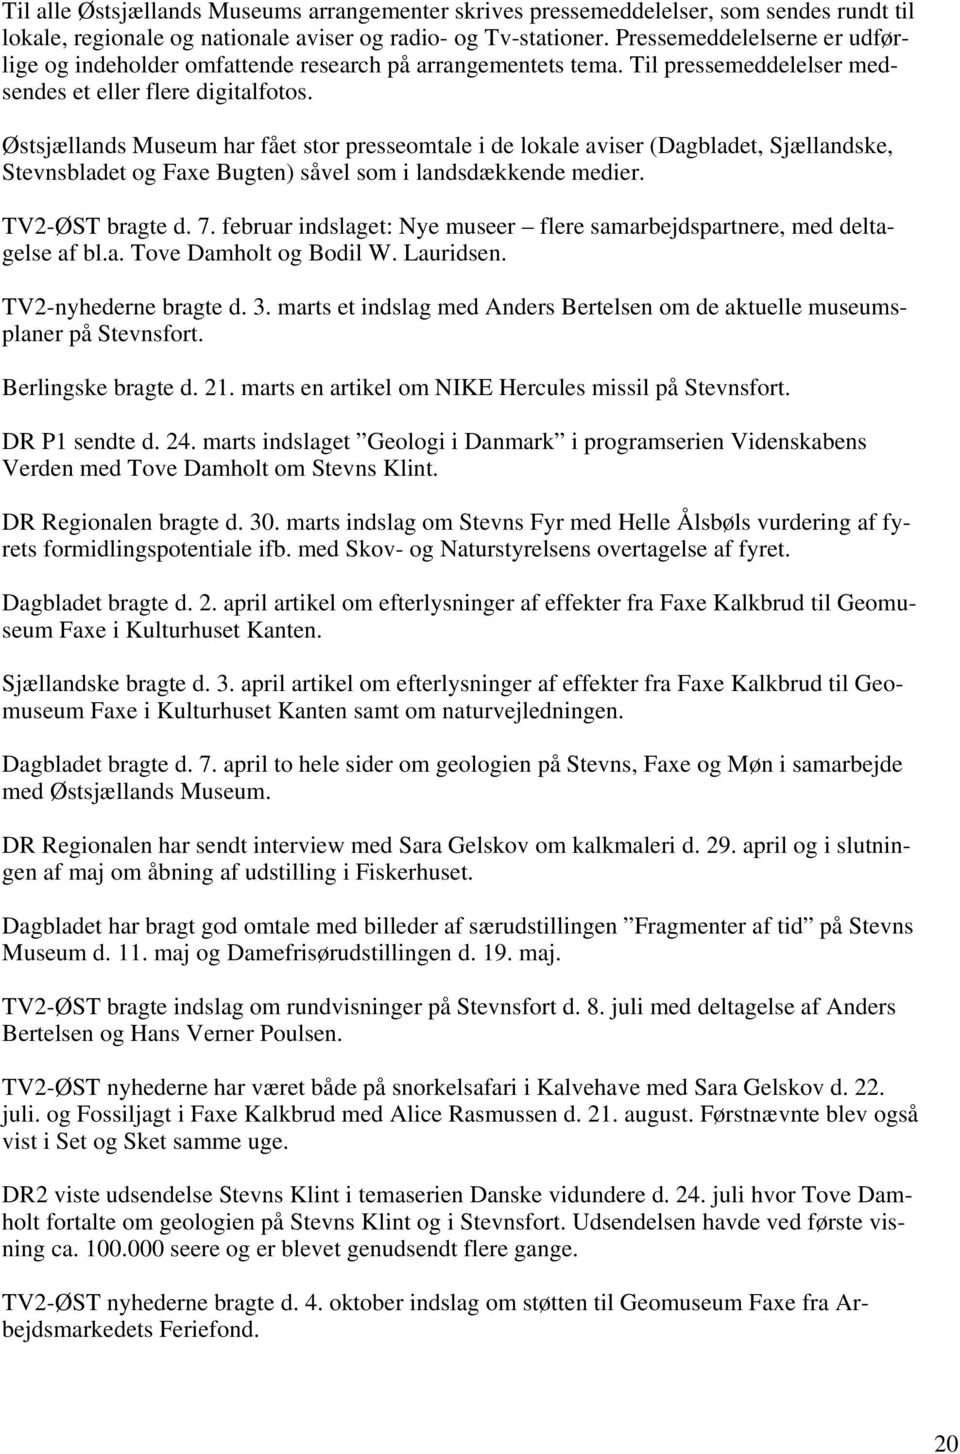 Østsjællands Museum har fået stor presseomtale i de lokale aviser (Dagbladet, Sjællandske, Stevnsbladet og Faxe Bugten) såvel som i landsdækkende medier. TV2-ØST bragte d. 7.